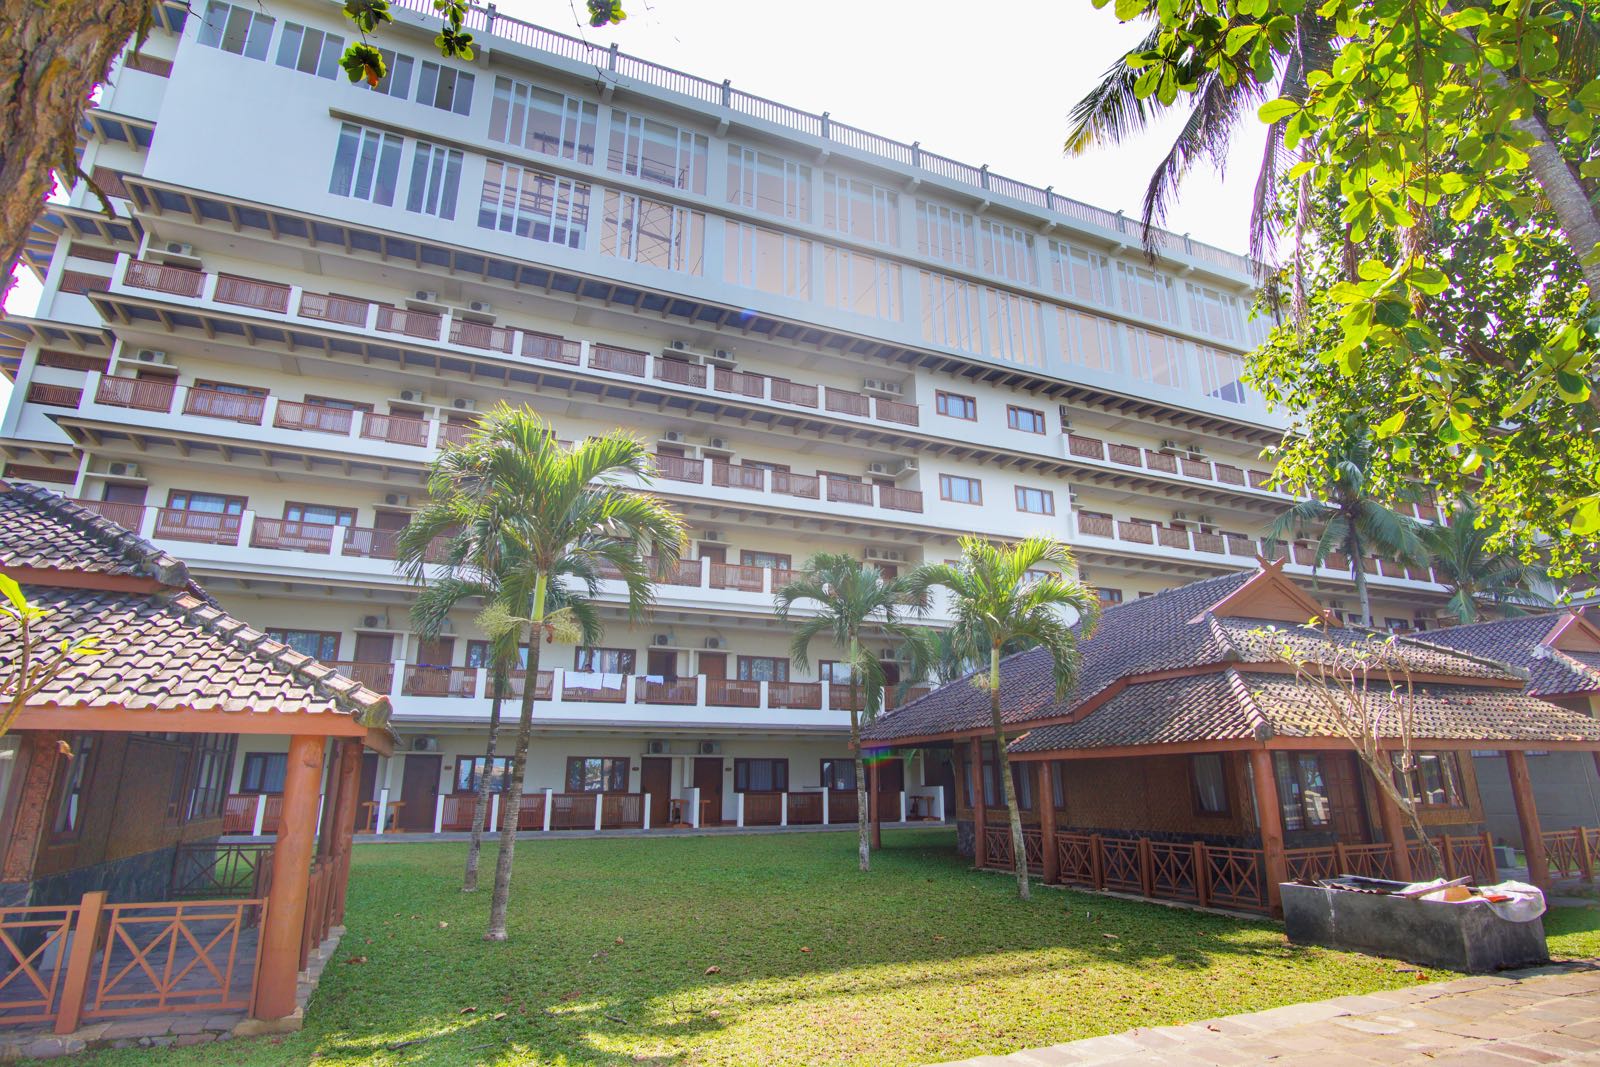 Review Pantai Indah Resort & Hotel, Pangandaran - PergiDulu.com